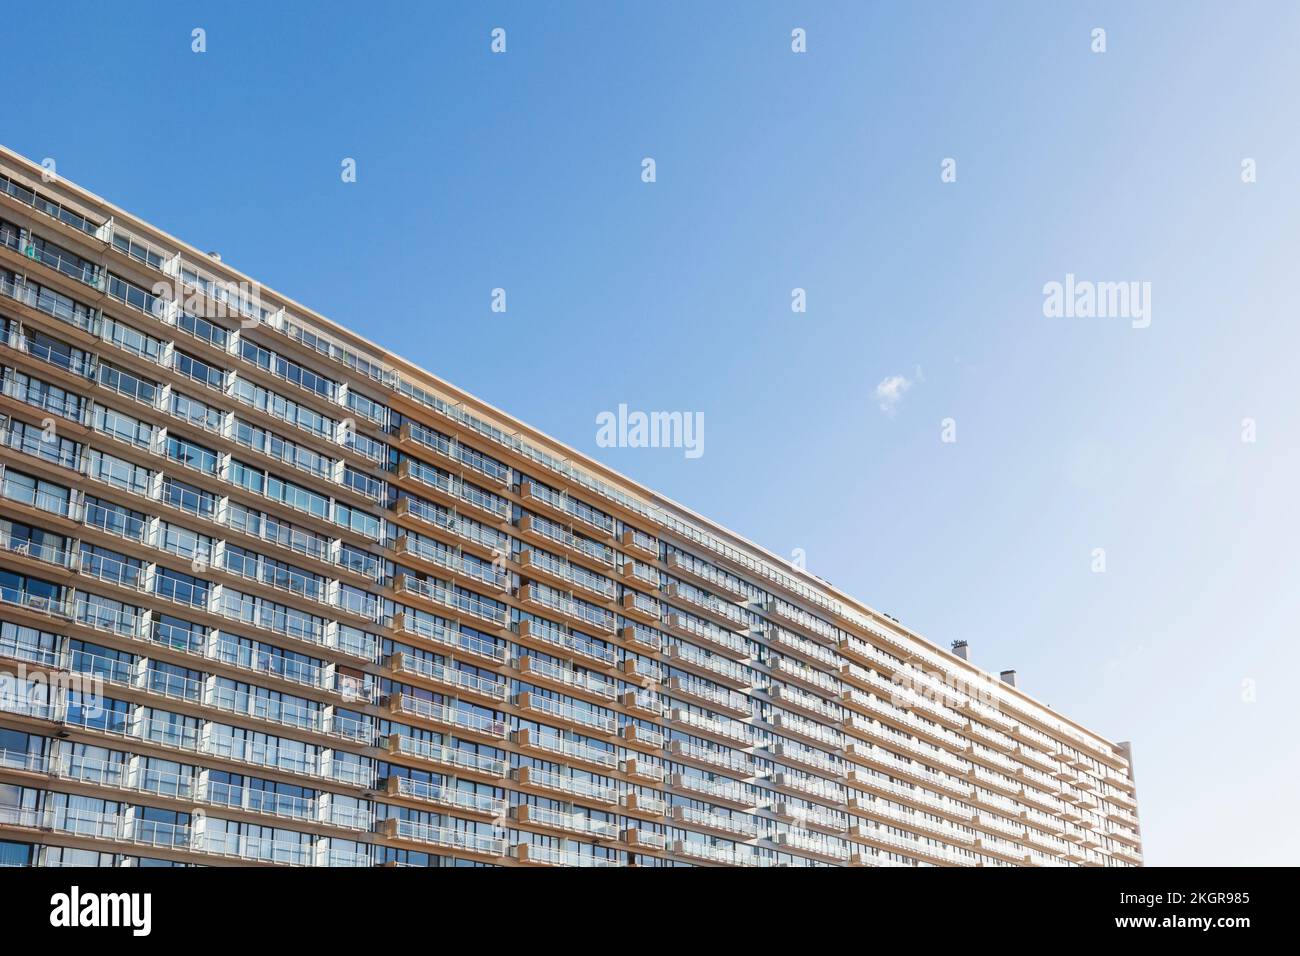 Belgique, Flandre Occidentale, fenêtres de grand immeuble d'appartements Banque D'Images